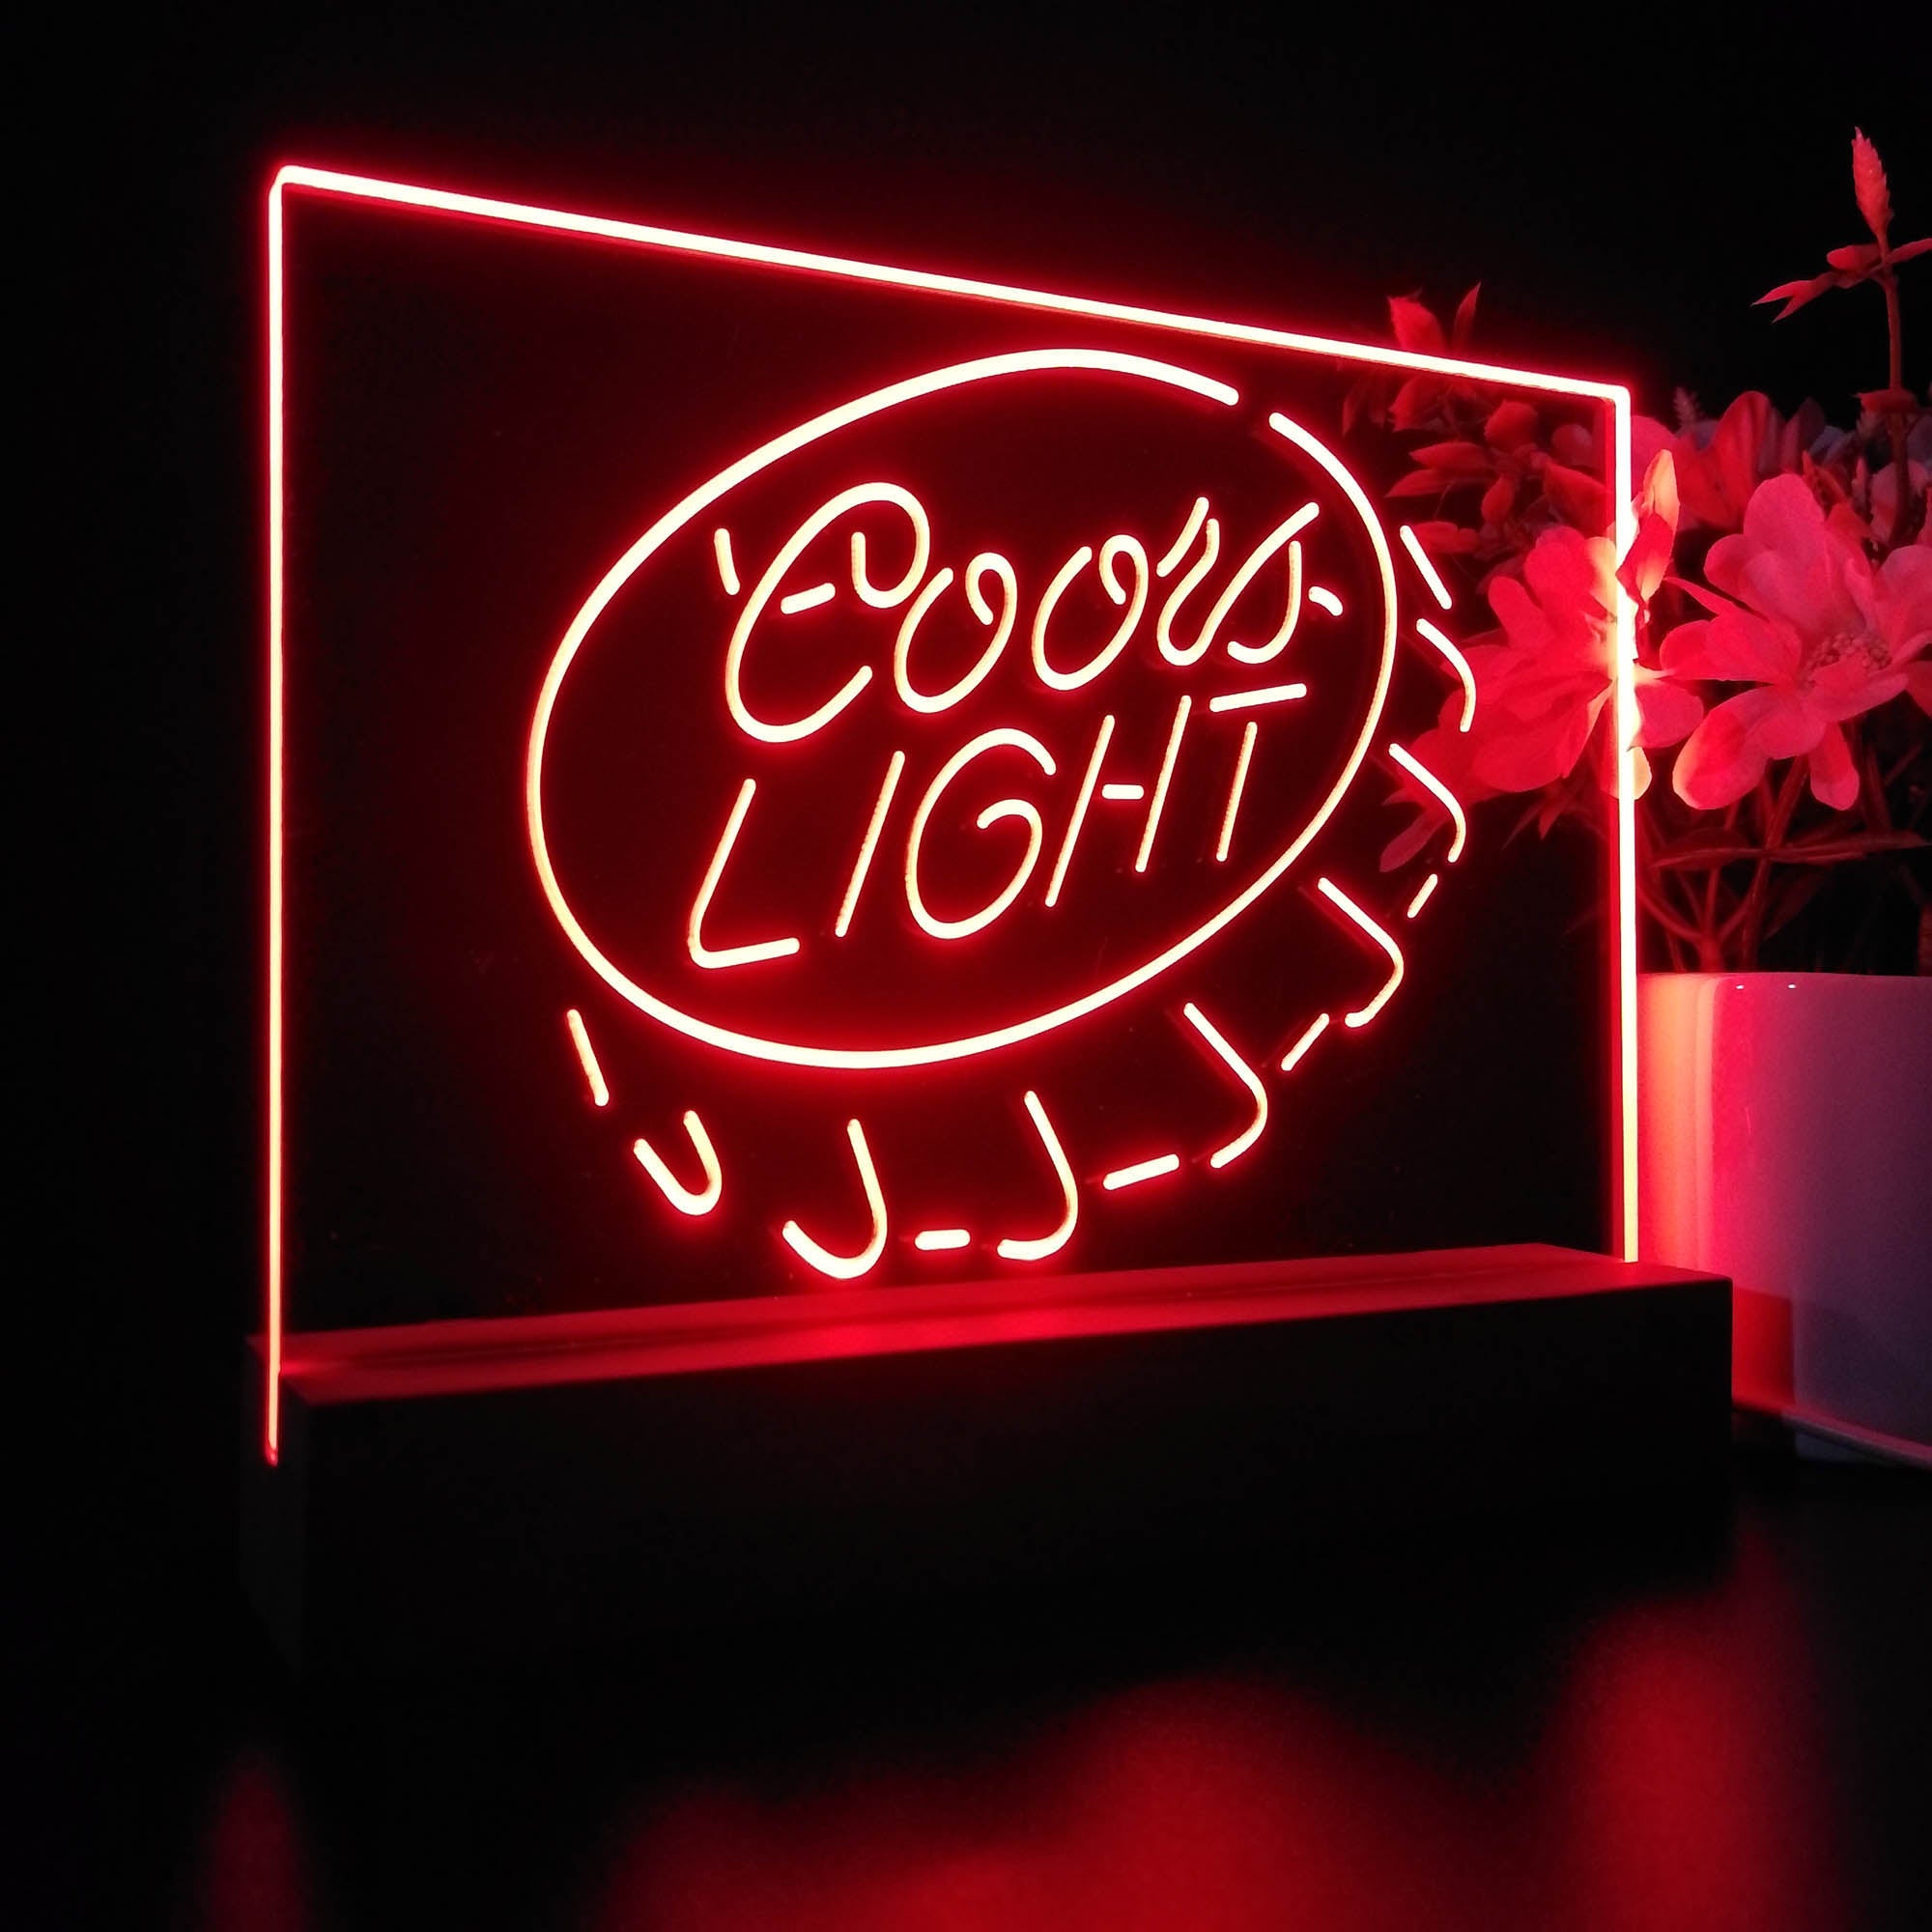 Coors Light Bottle Cap Night Light LED Sign